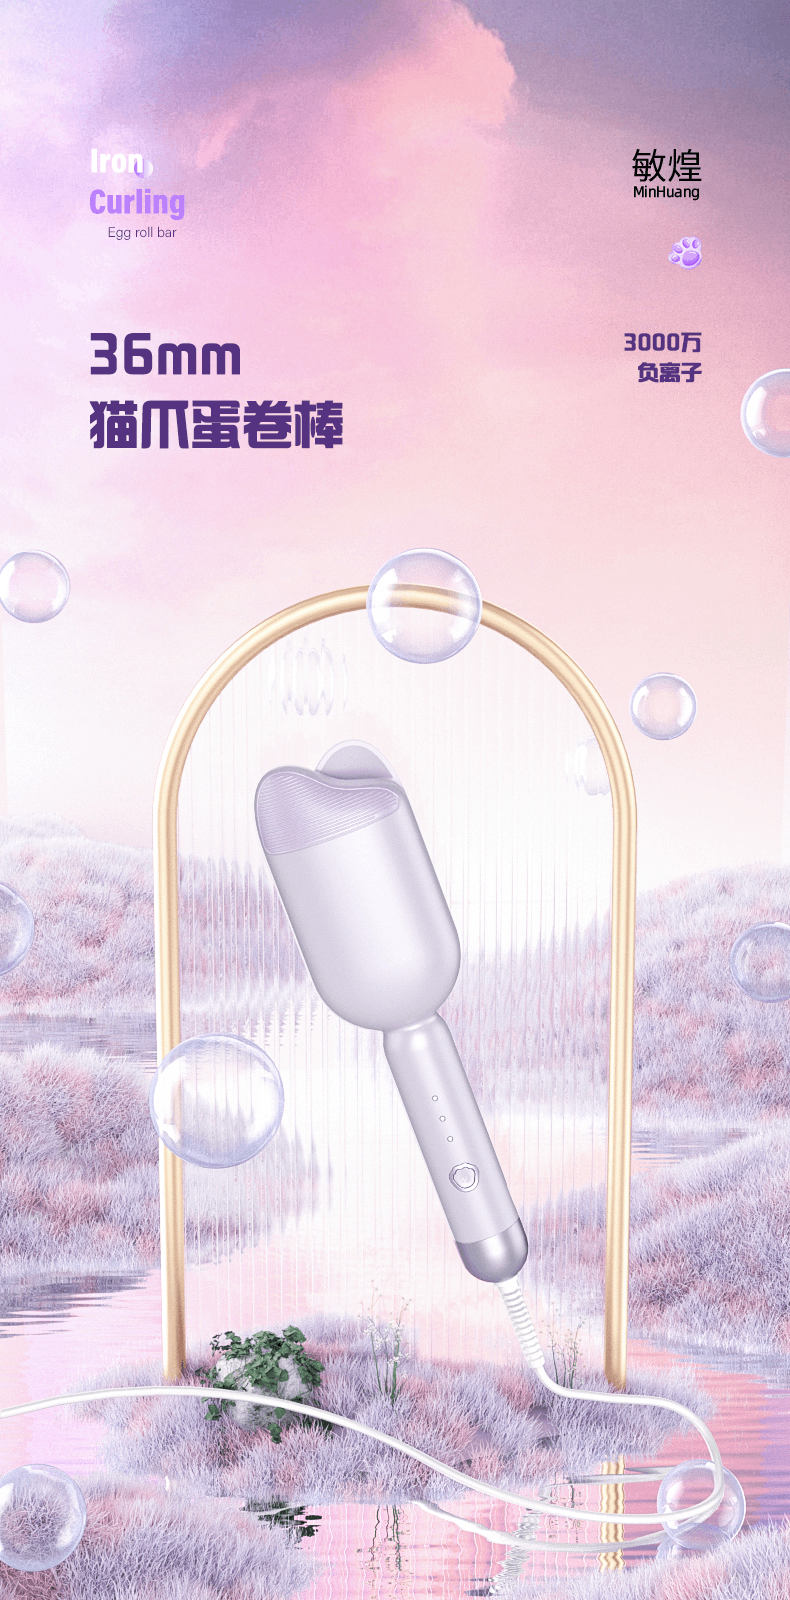 中國MinHuang敏煌負離子貓爪蛋捲棒 造型神器 紫色 1件